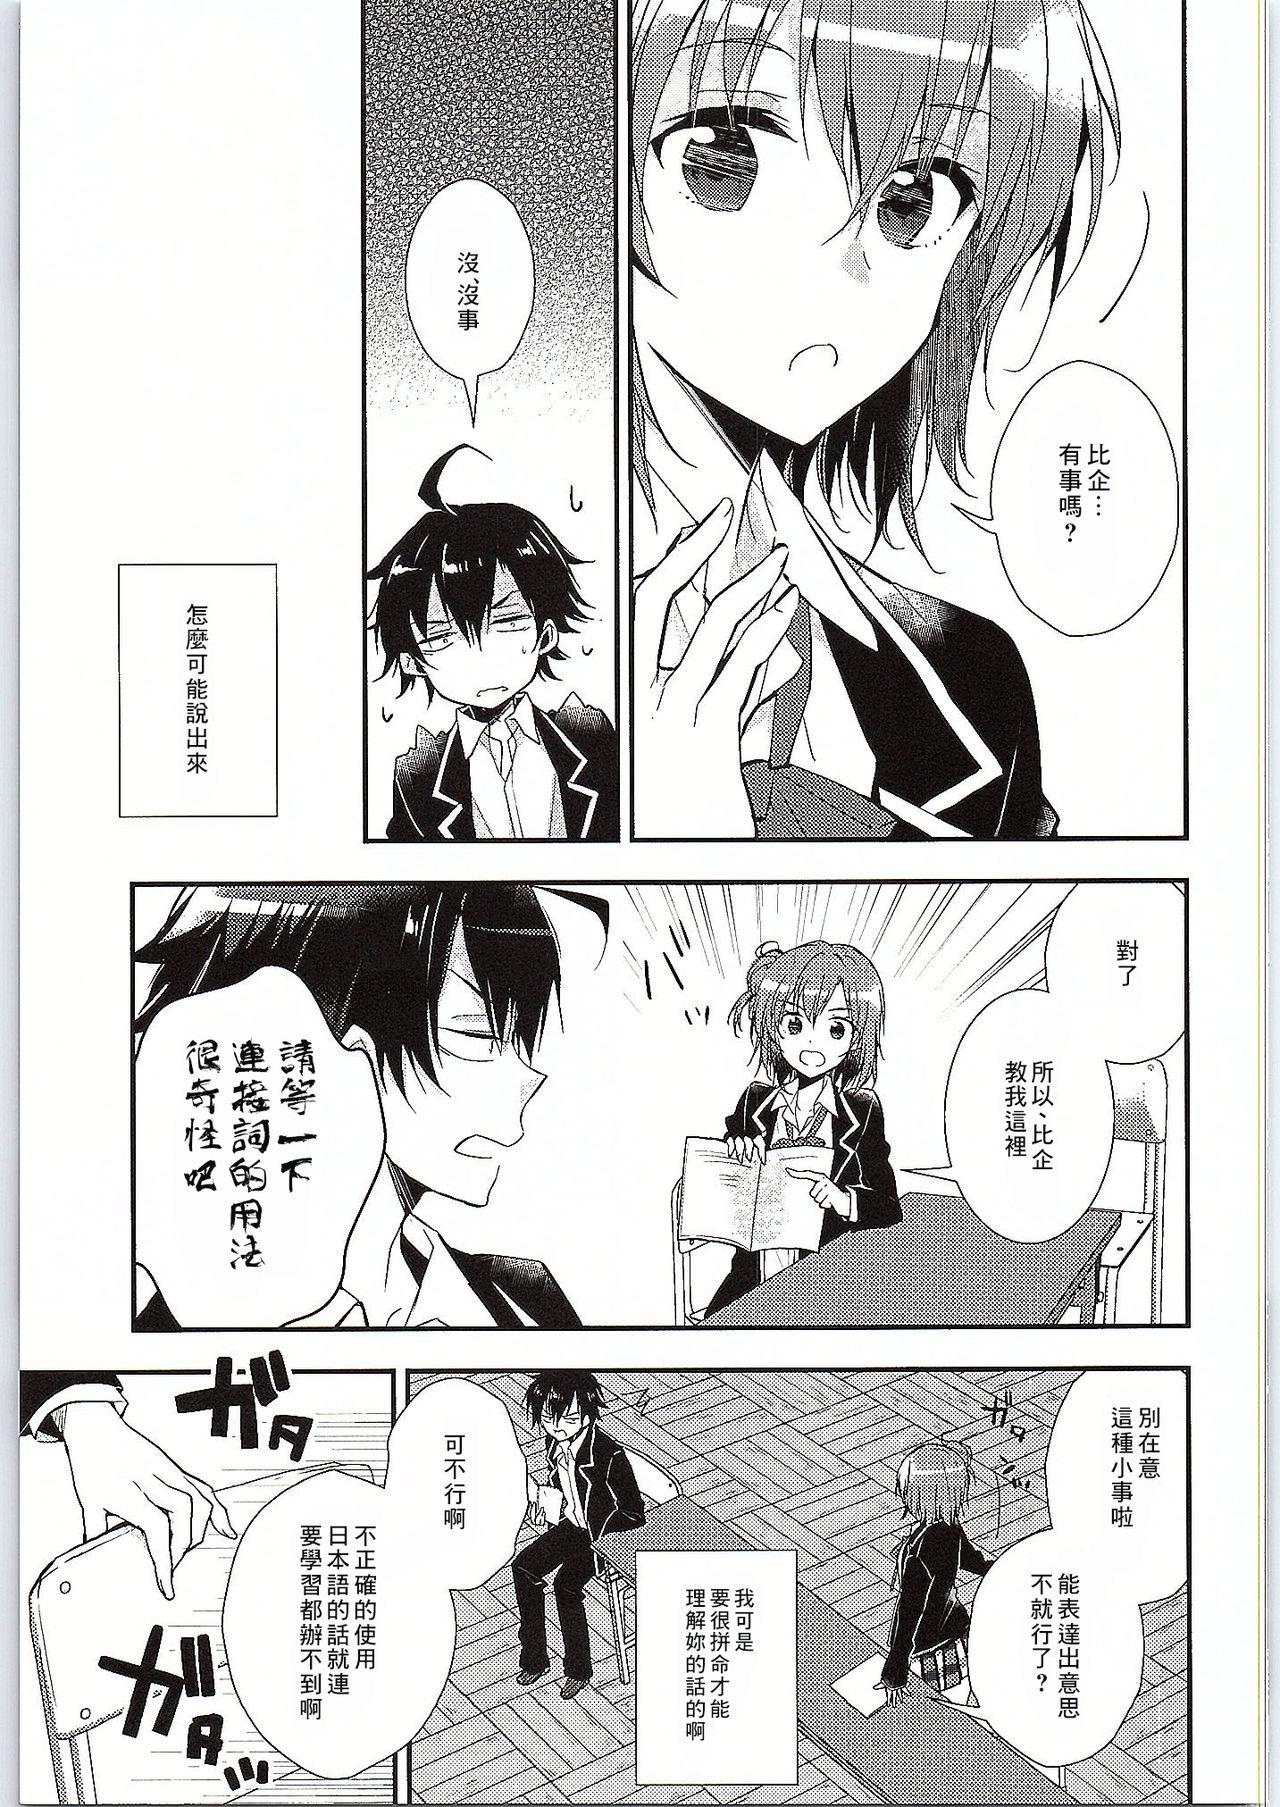 Bdsm Chotto, Yuigahama-san chika sugimasu yo. - Yahari ore no seishun love come wa machigatteiru Story - Page 7